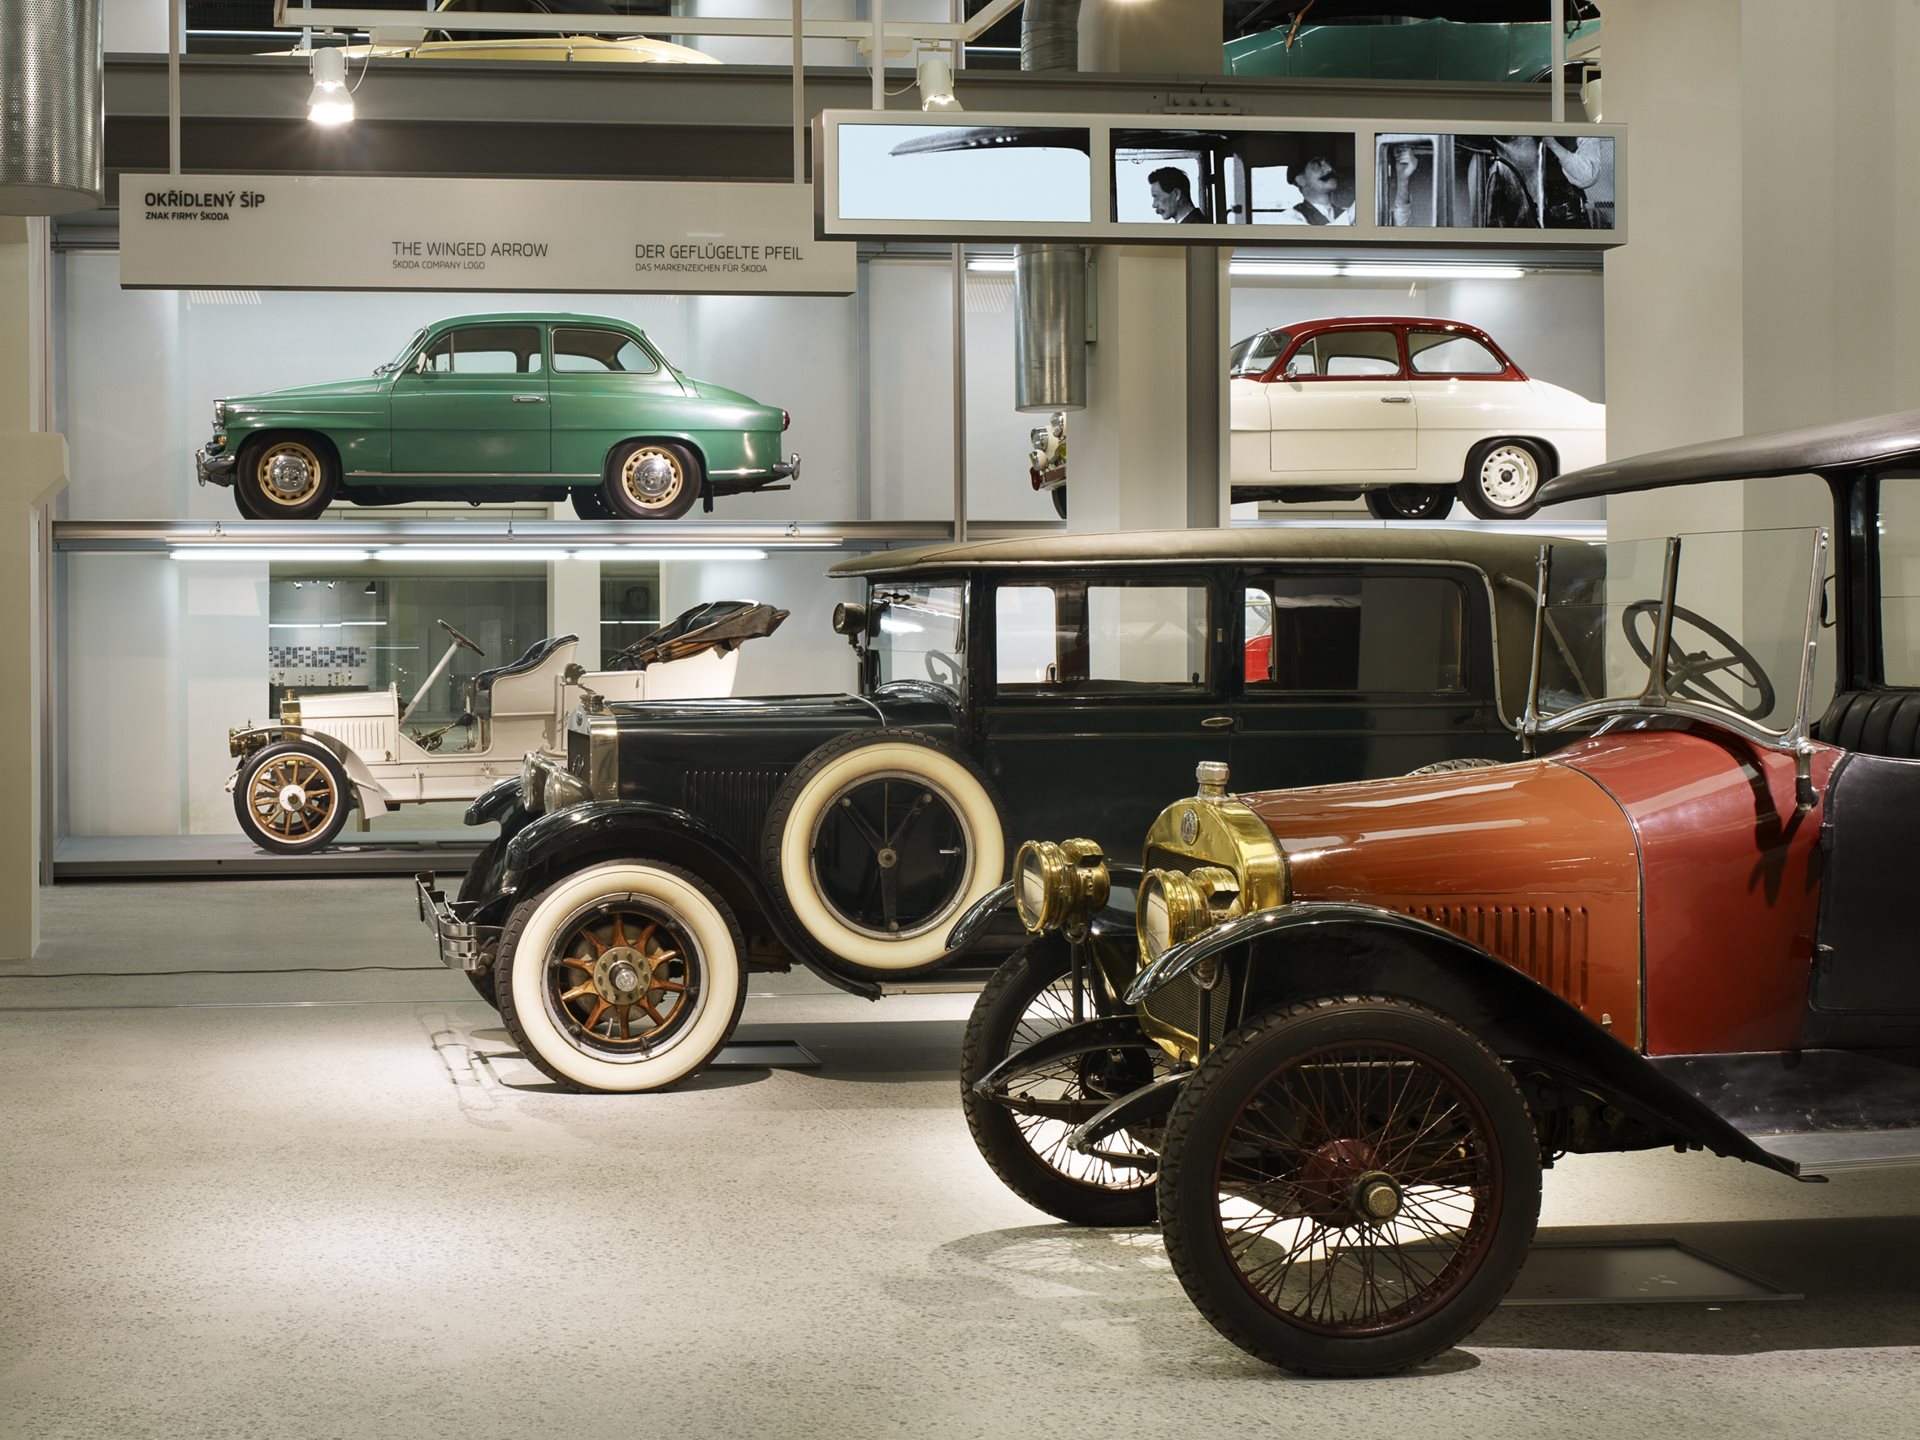 Trước khi đến Việt Nam, Skoda có lịch sử như thế nào: Nhiều dòng xe nổi tiếng, tận dụng công nghệ từ VW - Ảnh 2.